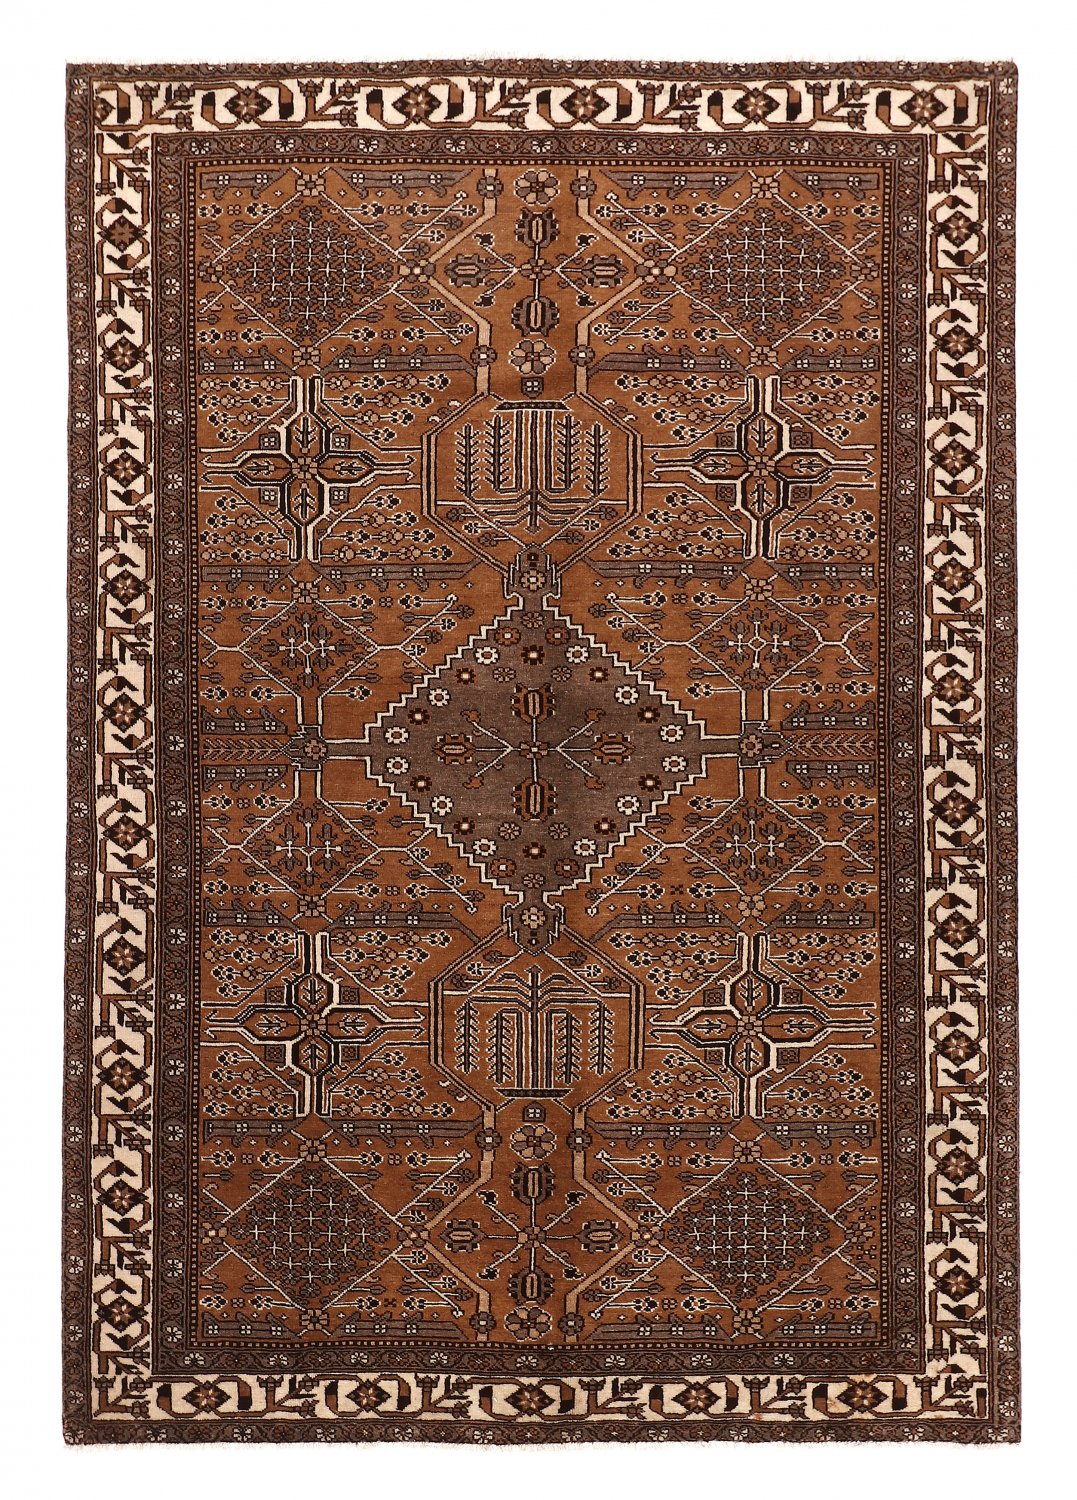 Persian rug Hamedan 298 x 206 cm